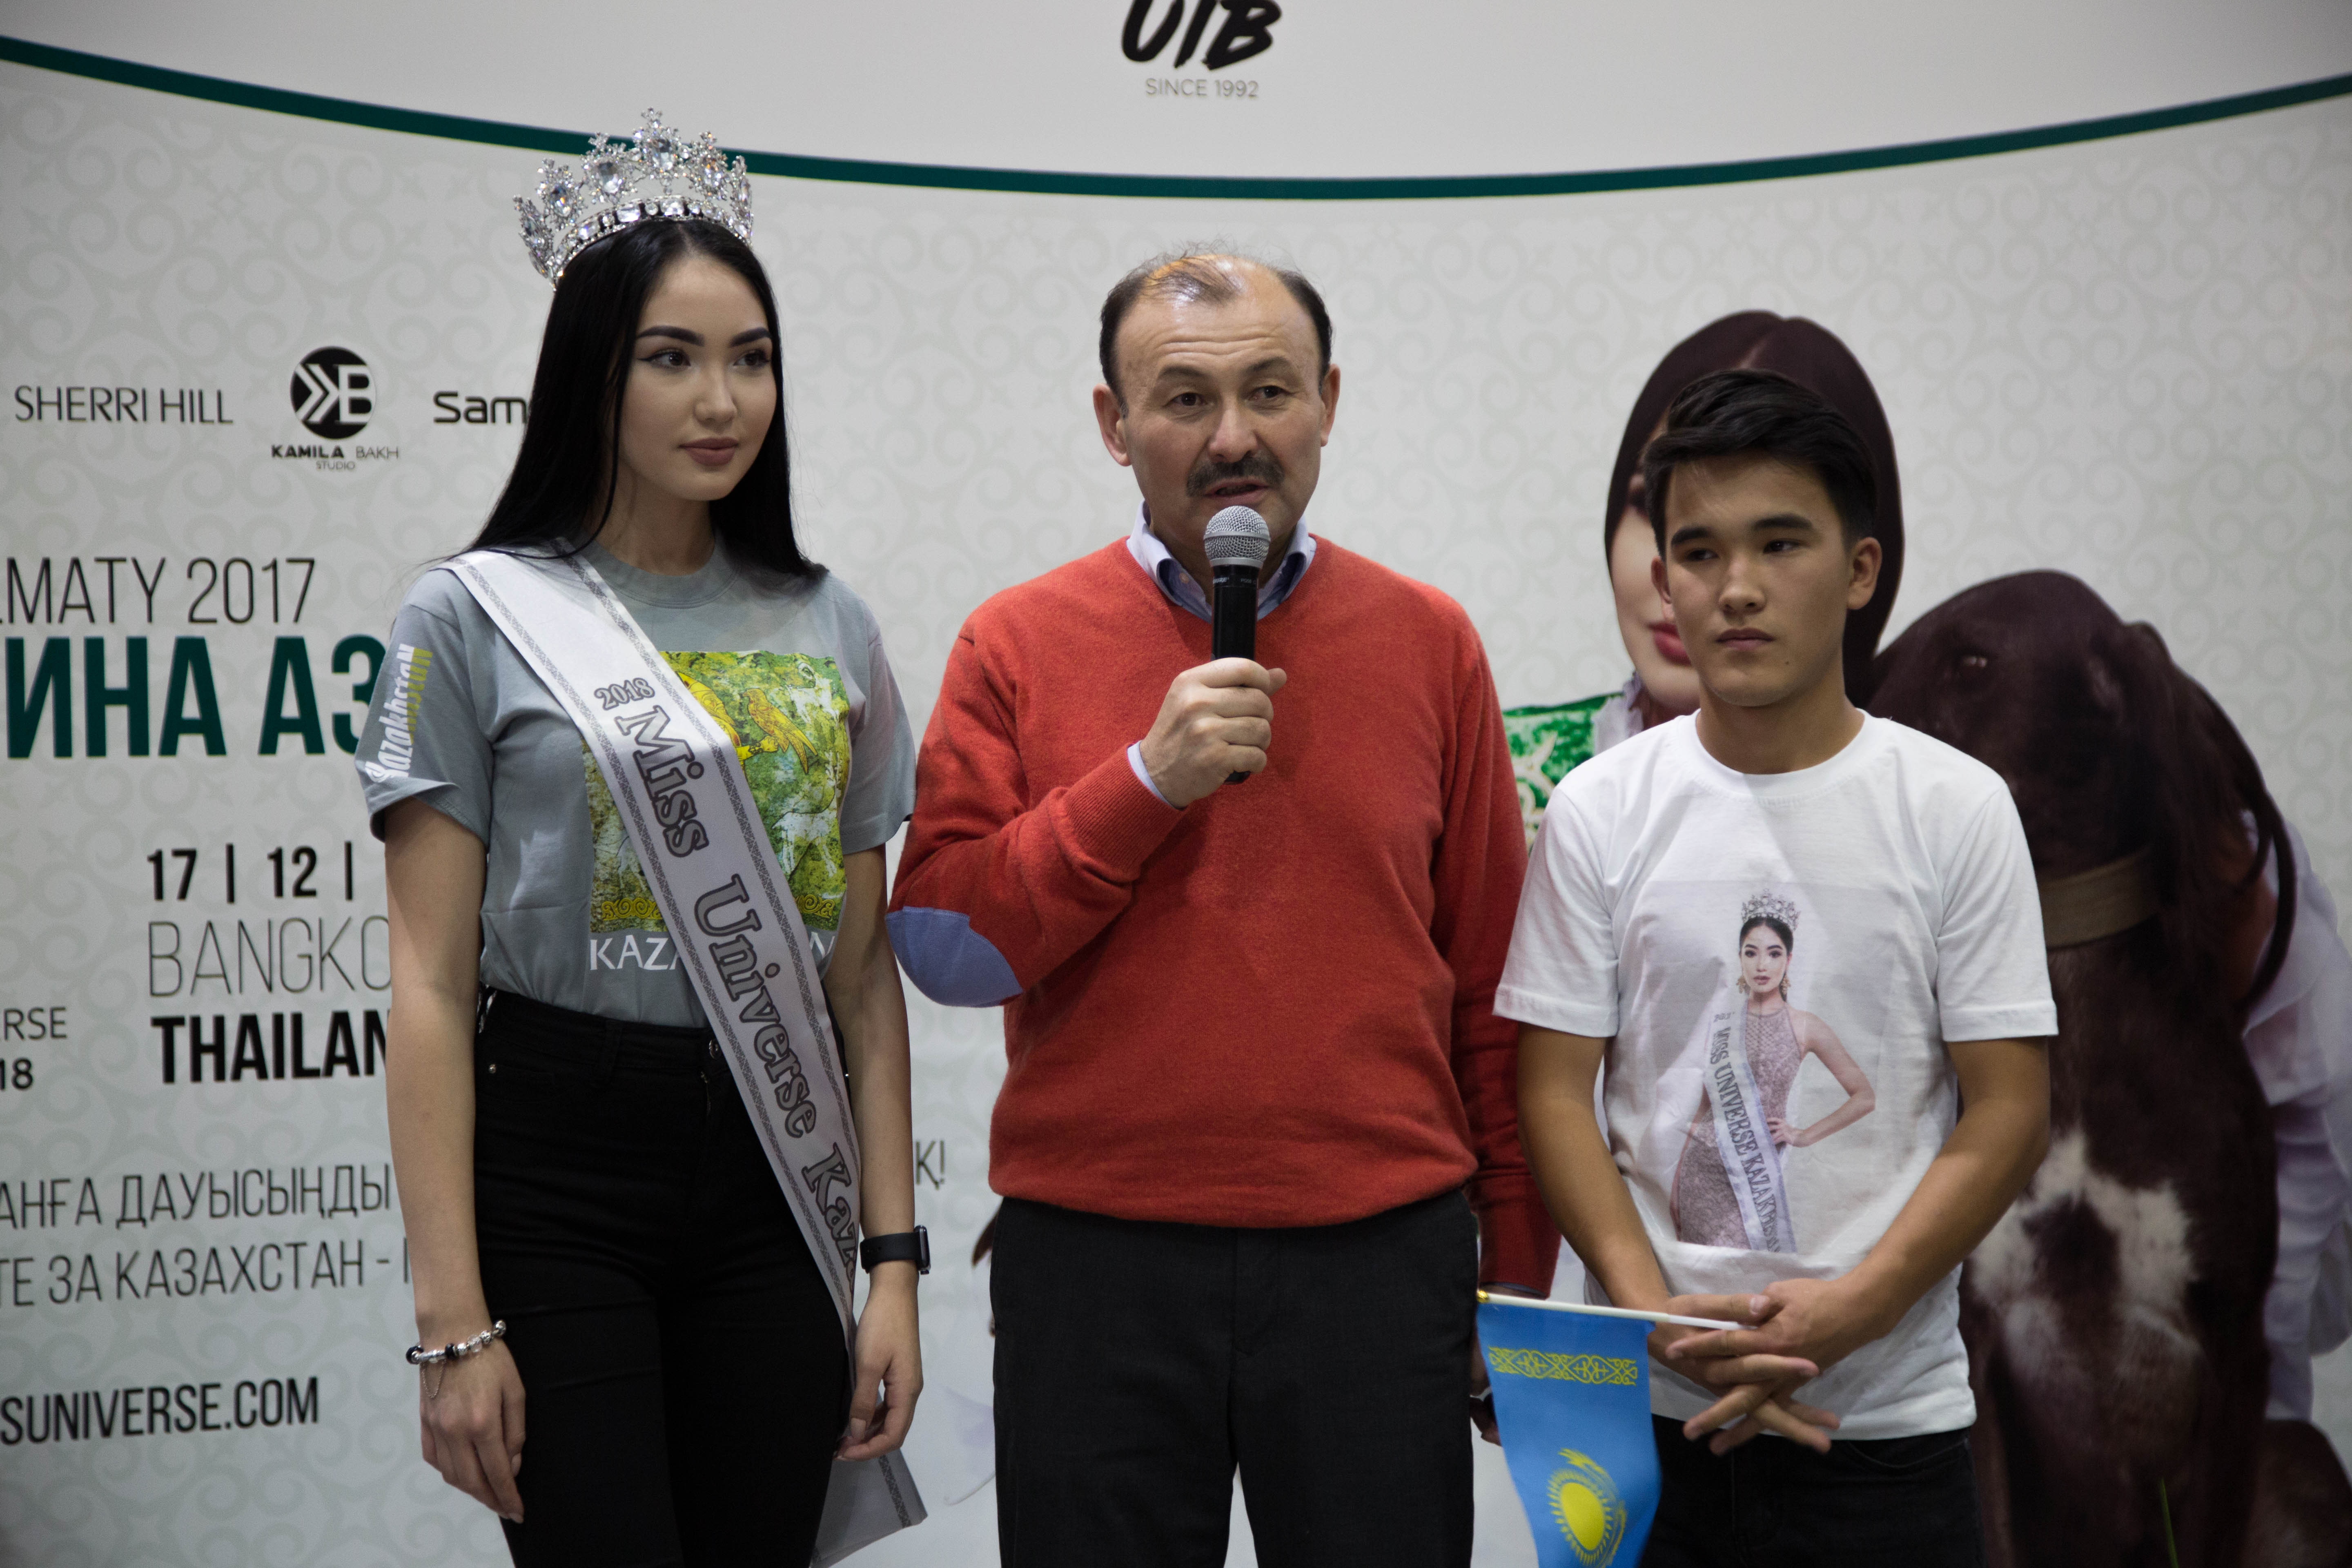 Сабину Азимбаеву с размахом проводили на конкурс «Мисс Вселенная 2018»